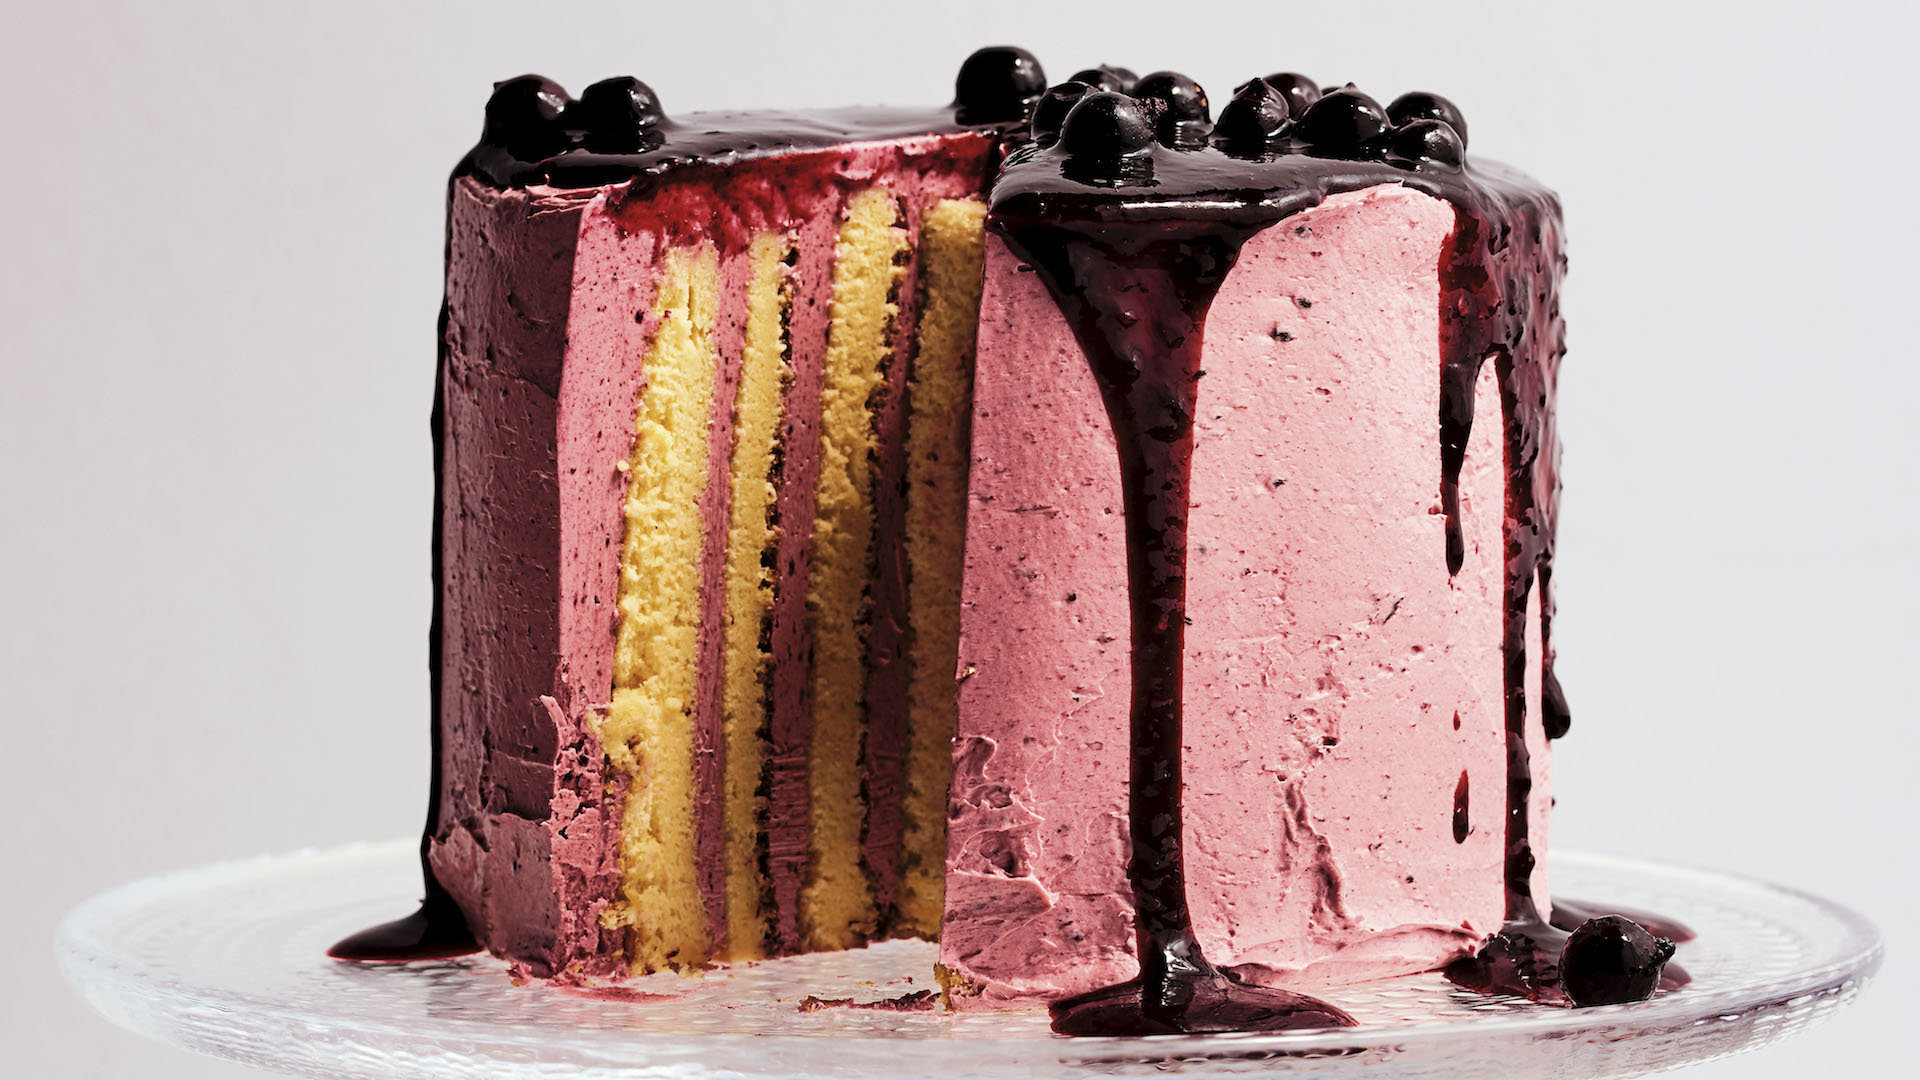 Lemon and Blackcurrant Stripe Cake - TODAY.com